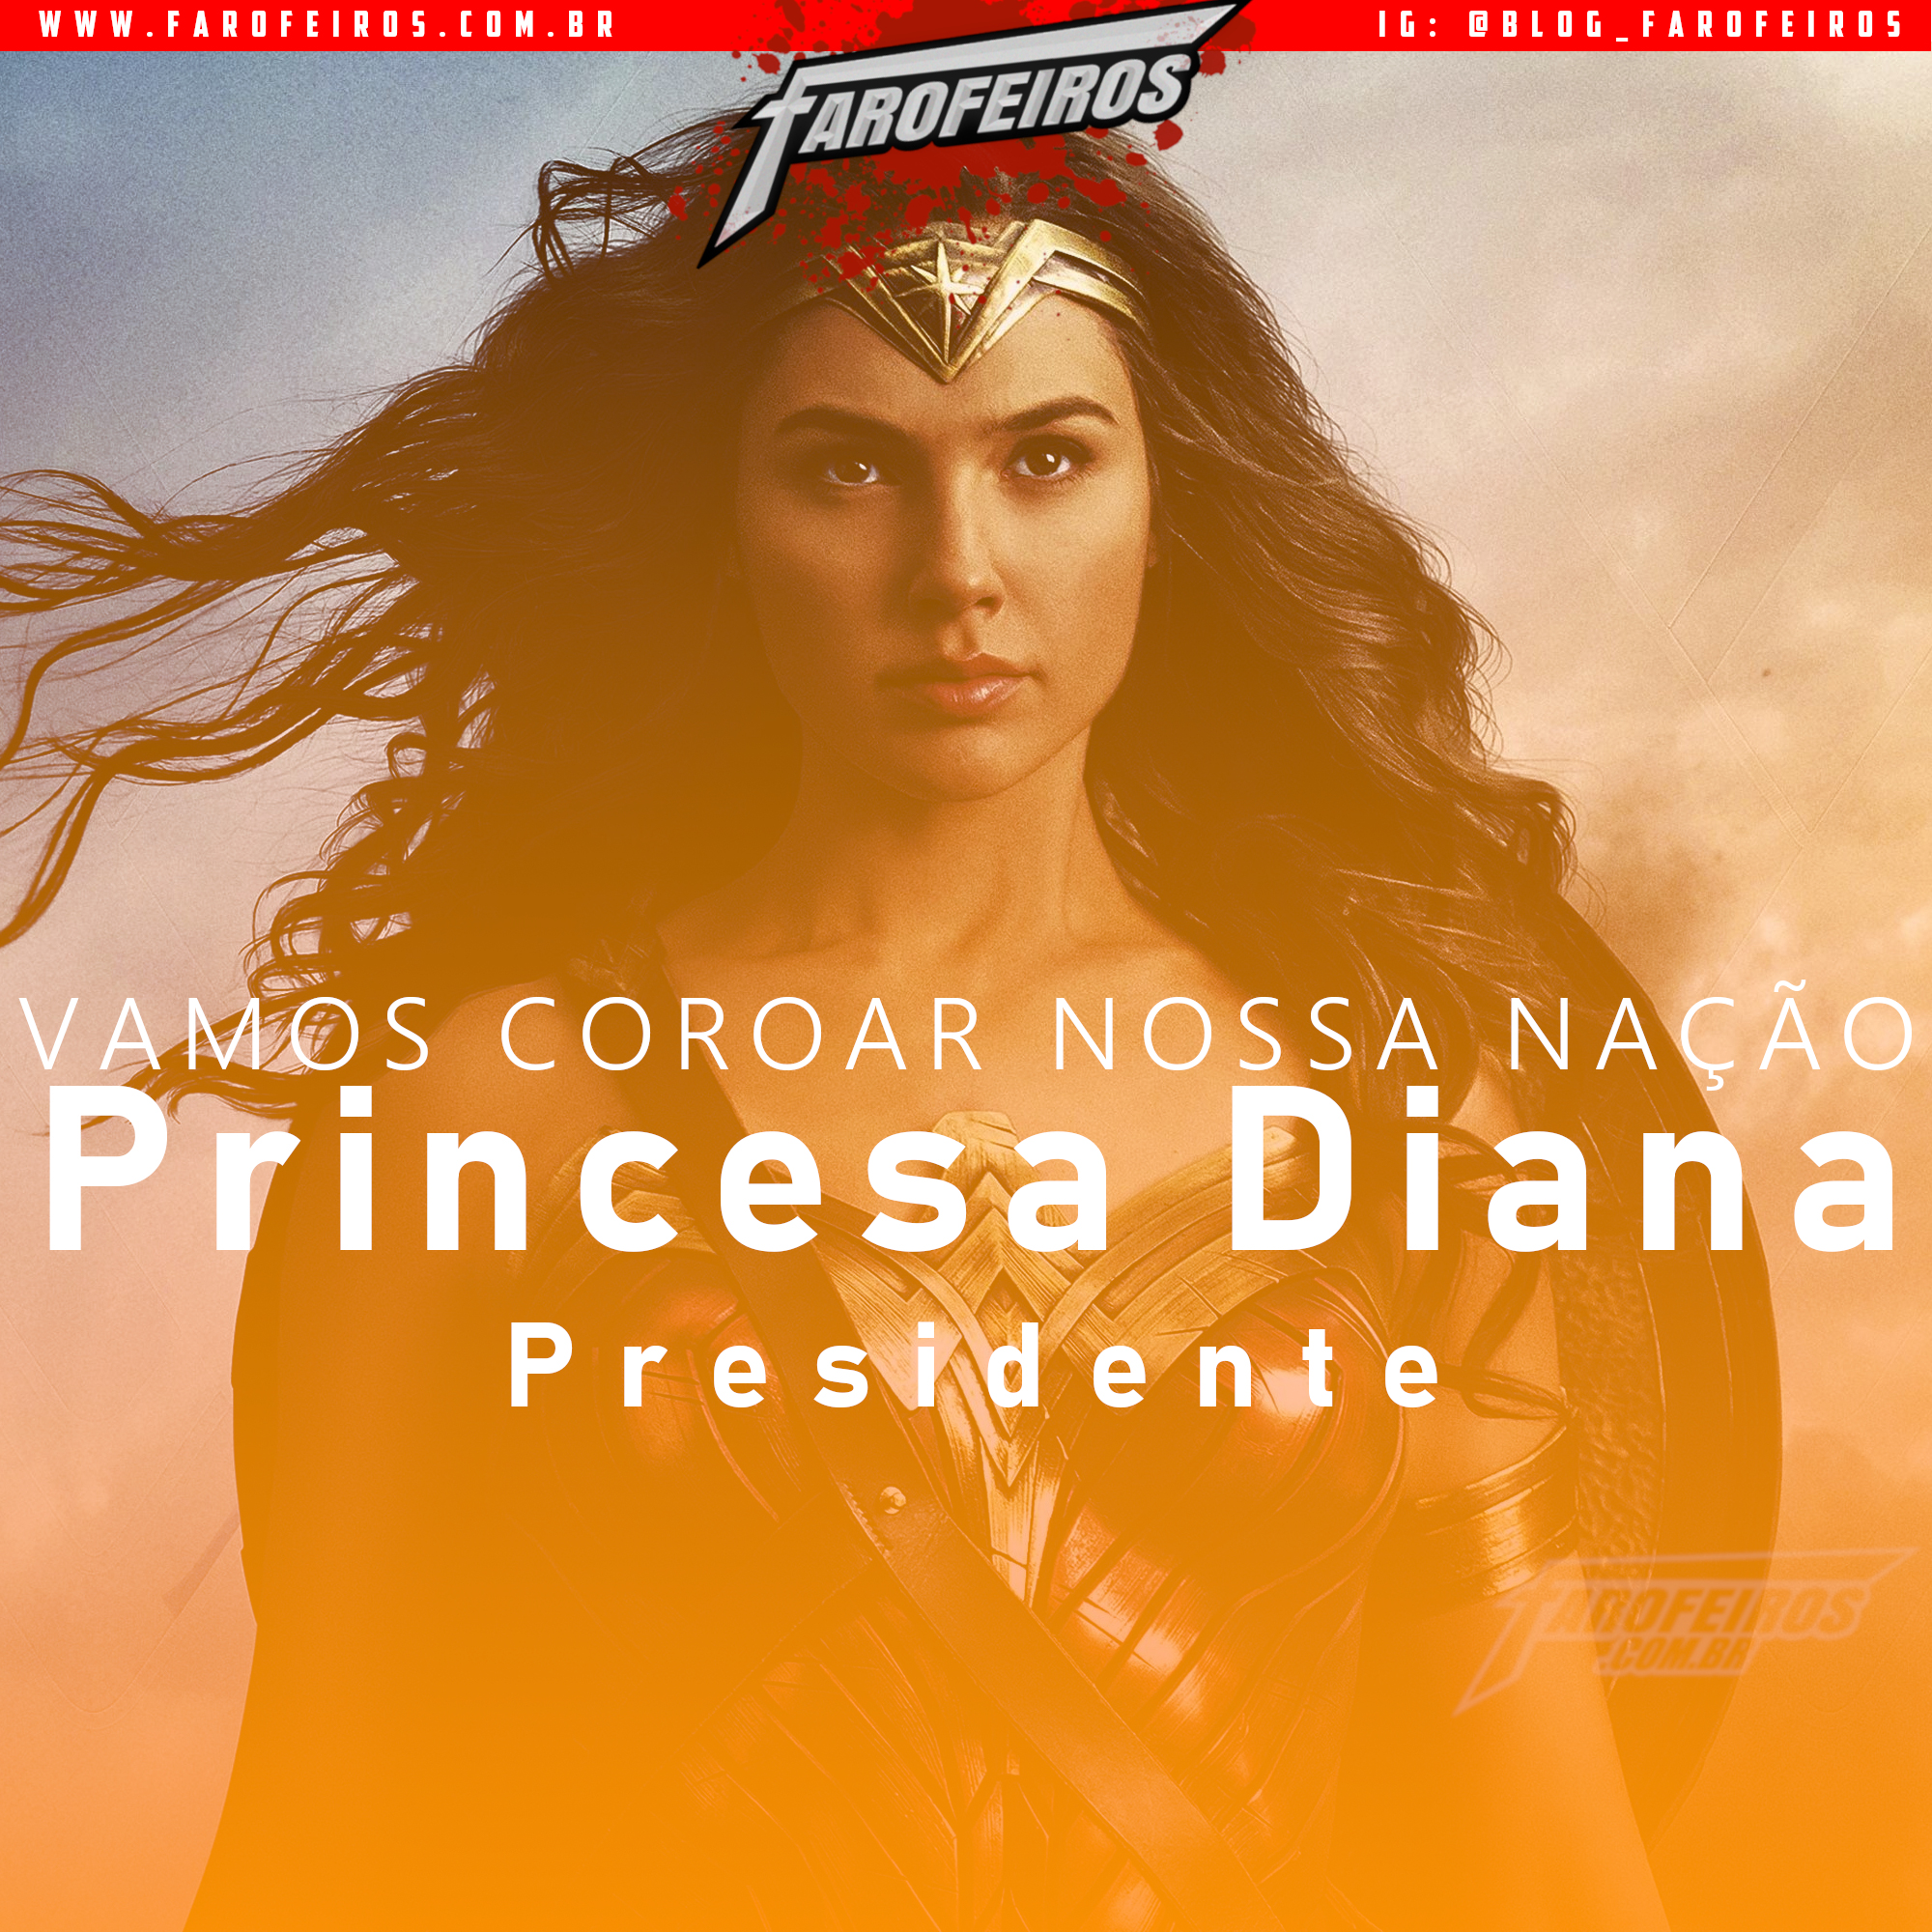 Super Eleições 2018 - Farofeiros com br - Princesa Diana - Mulher Maravilha - 1